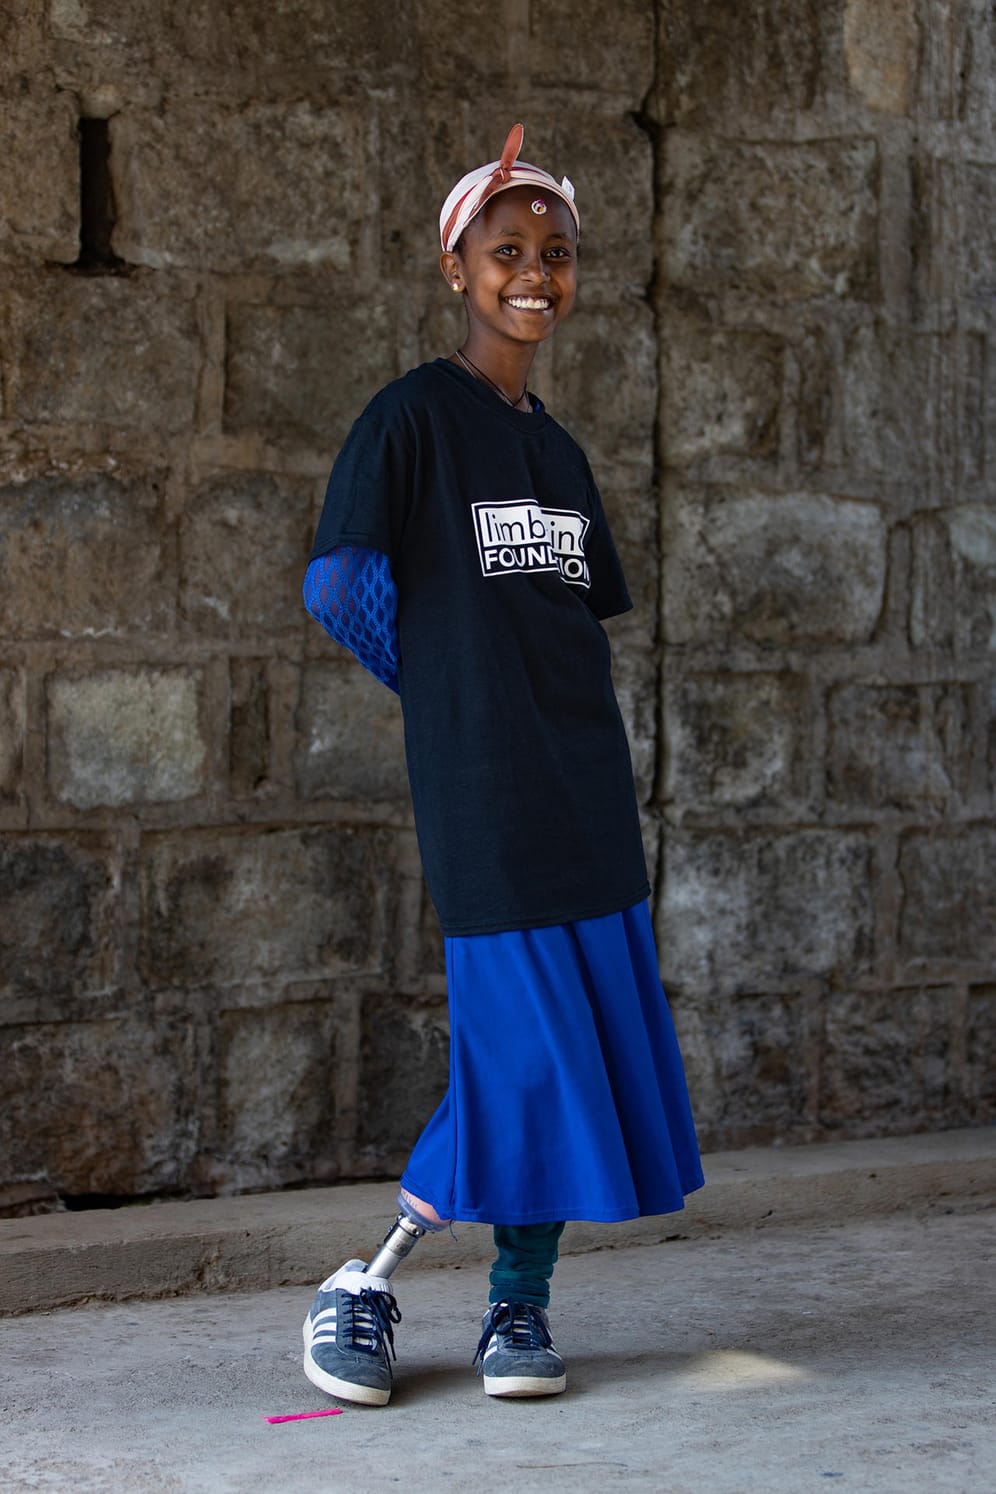 Matilde Simas aus den USA fotografierte ein Mädchen mit einer Beinprothese. Cure, eine christliche Non-Profit-Organisation aus Kanada, unterstützt Kinder, die aus verschiedenen Gründen keine Beine mehr haben, mit Prothesen. Das Foto zeigt die Freude eines Mädchens mit ihrer neuen Prothese.